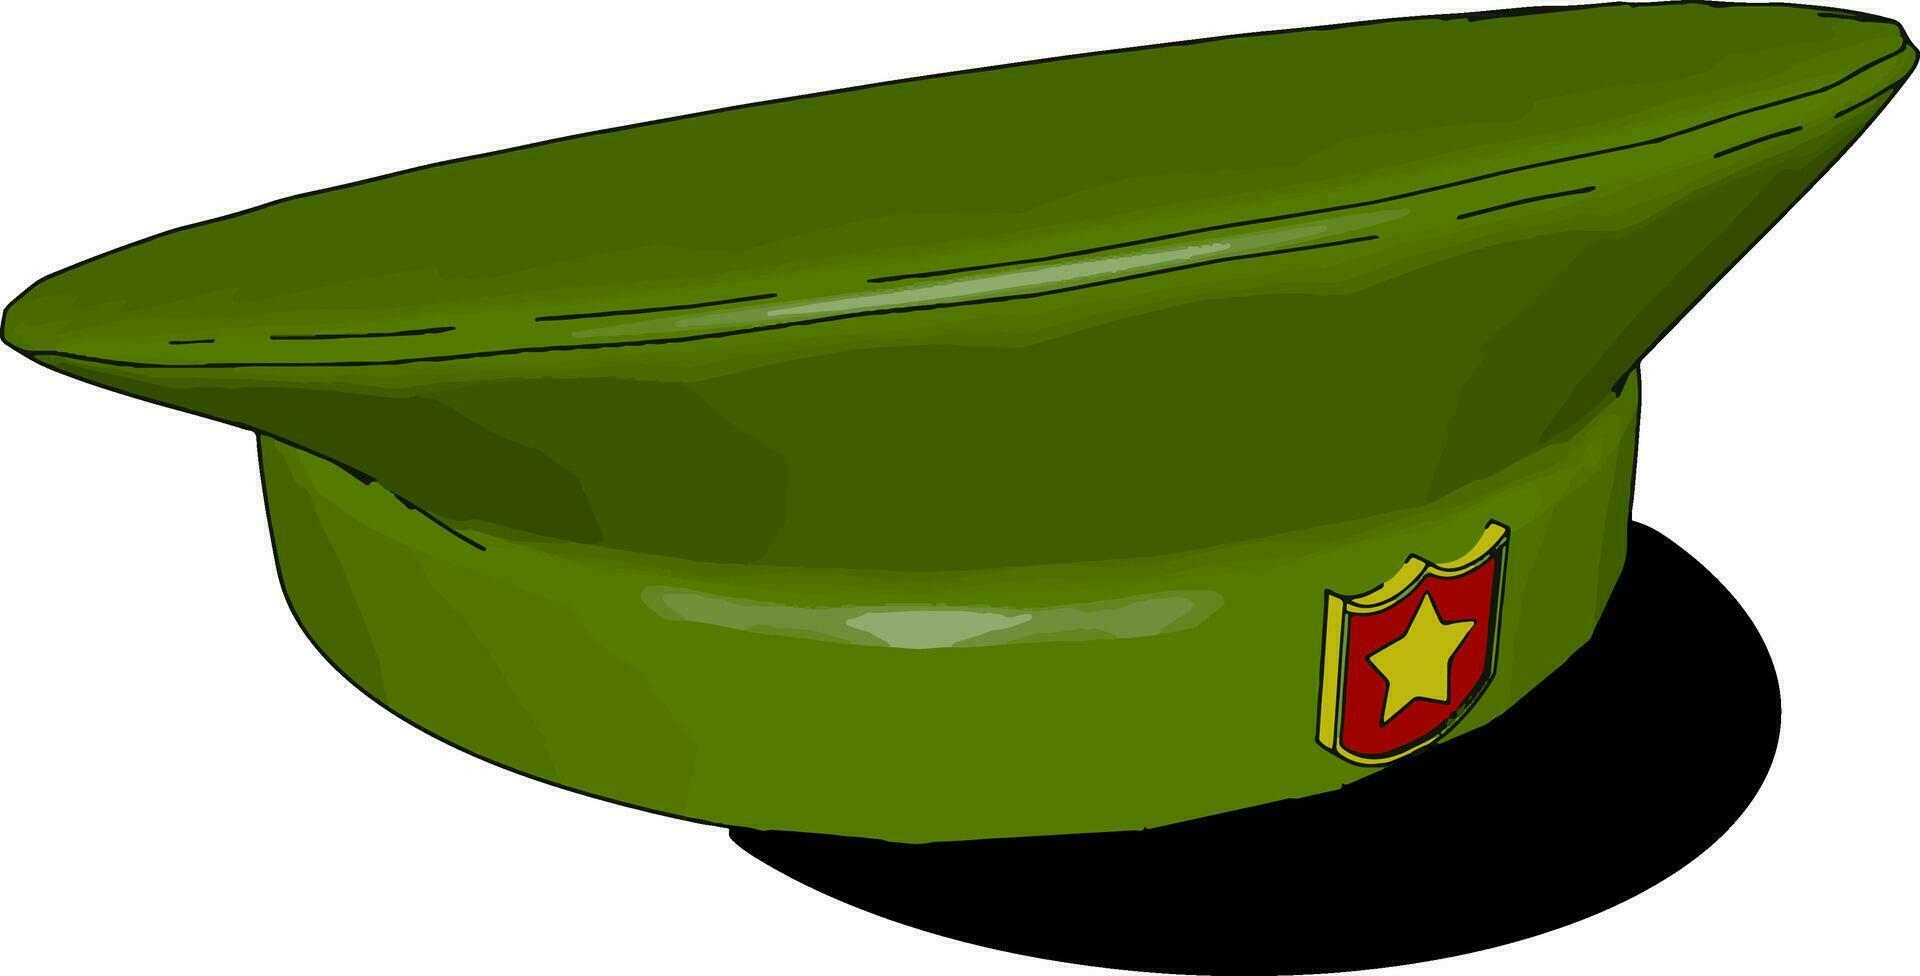 sombrero militar, ilustración, vector sobre fondo blanco.